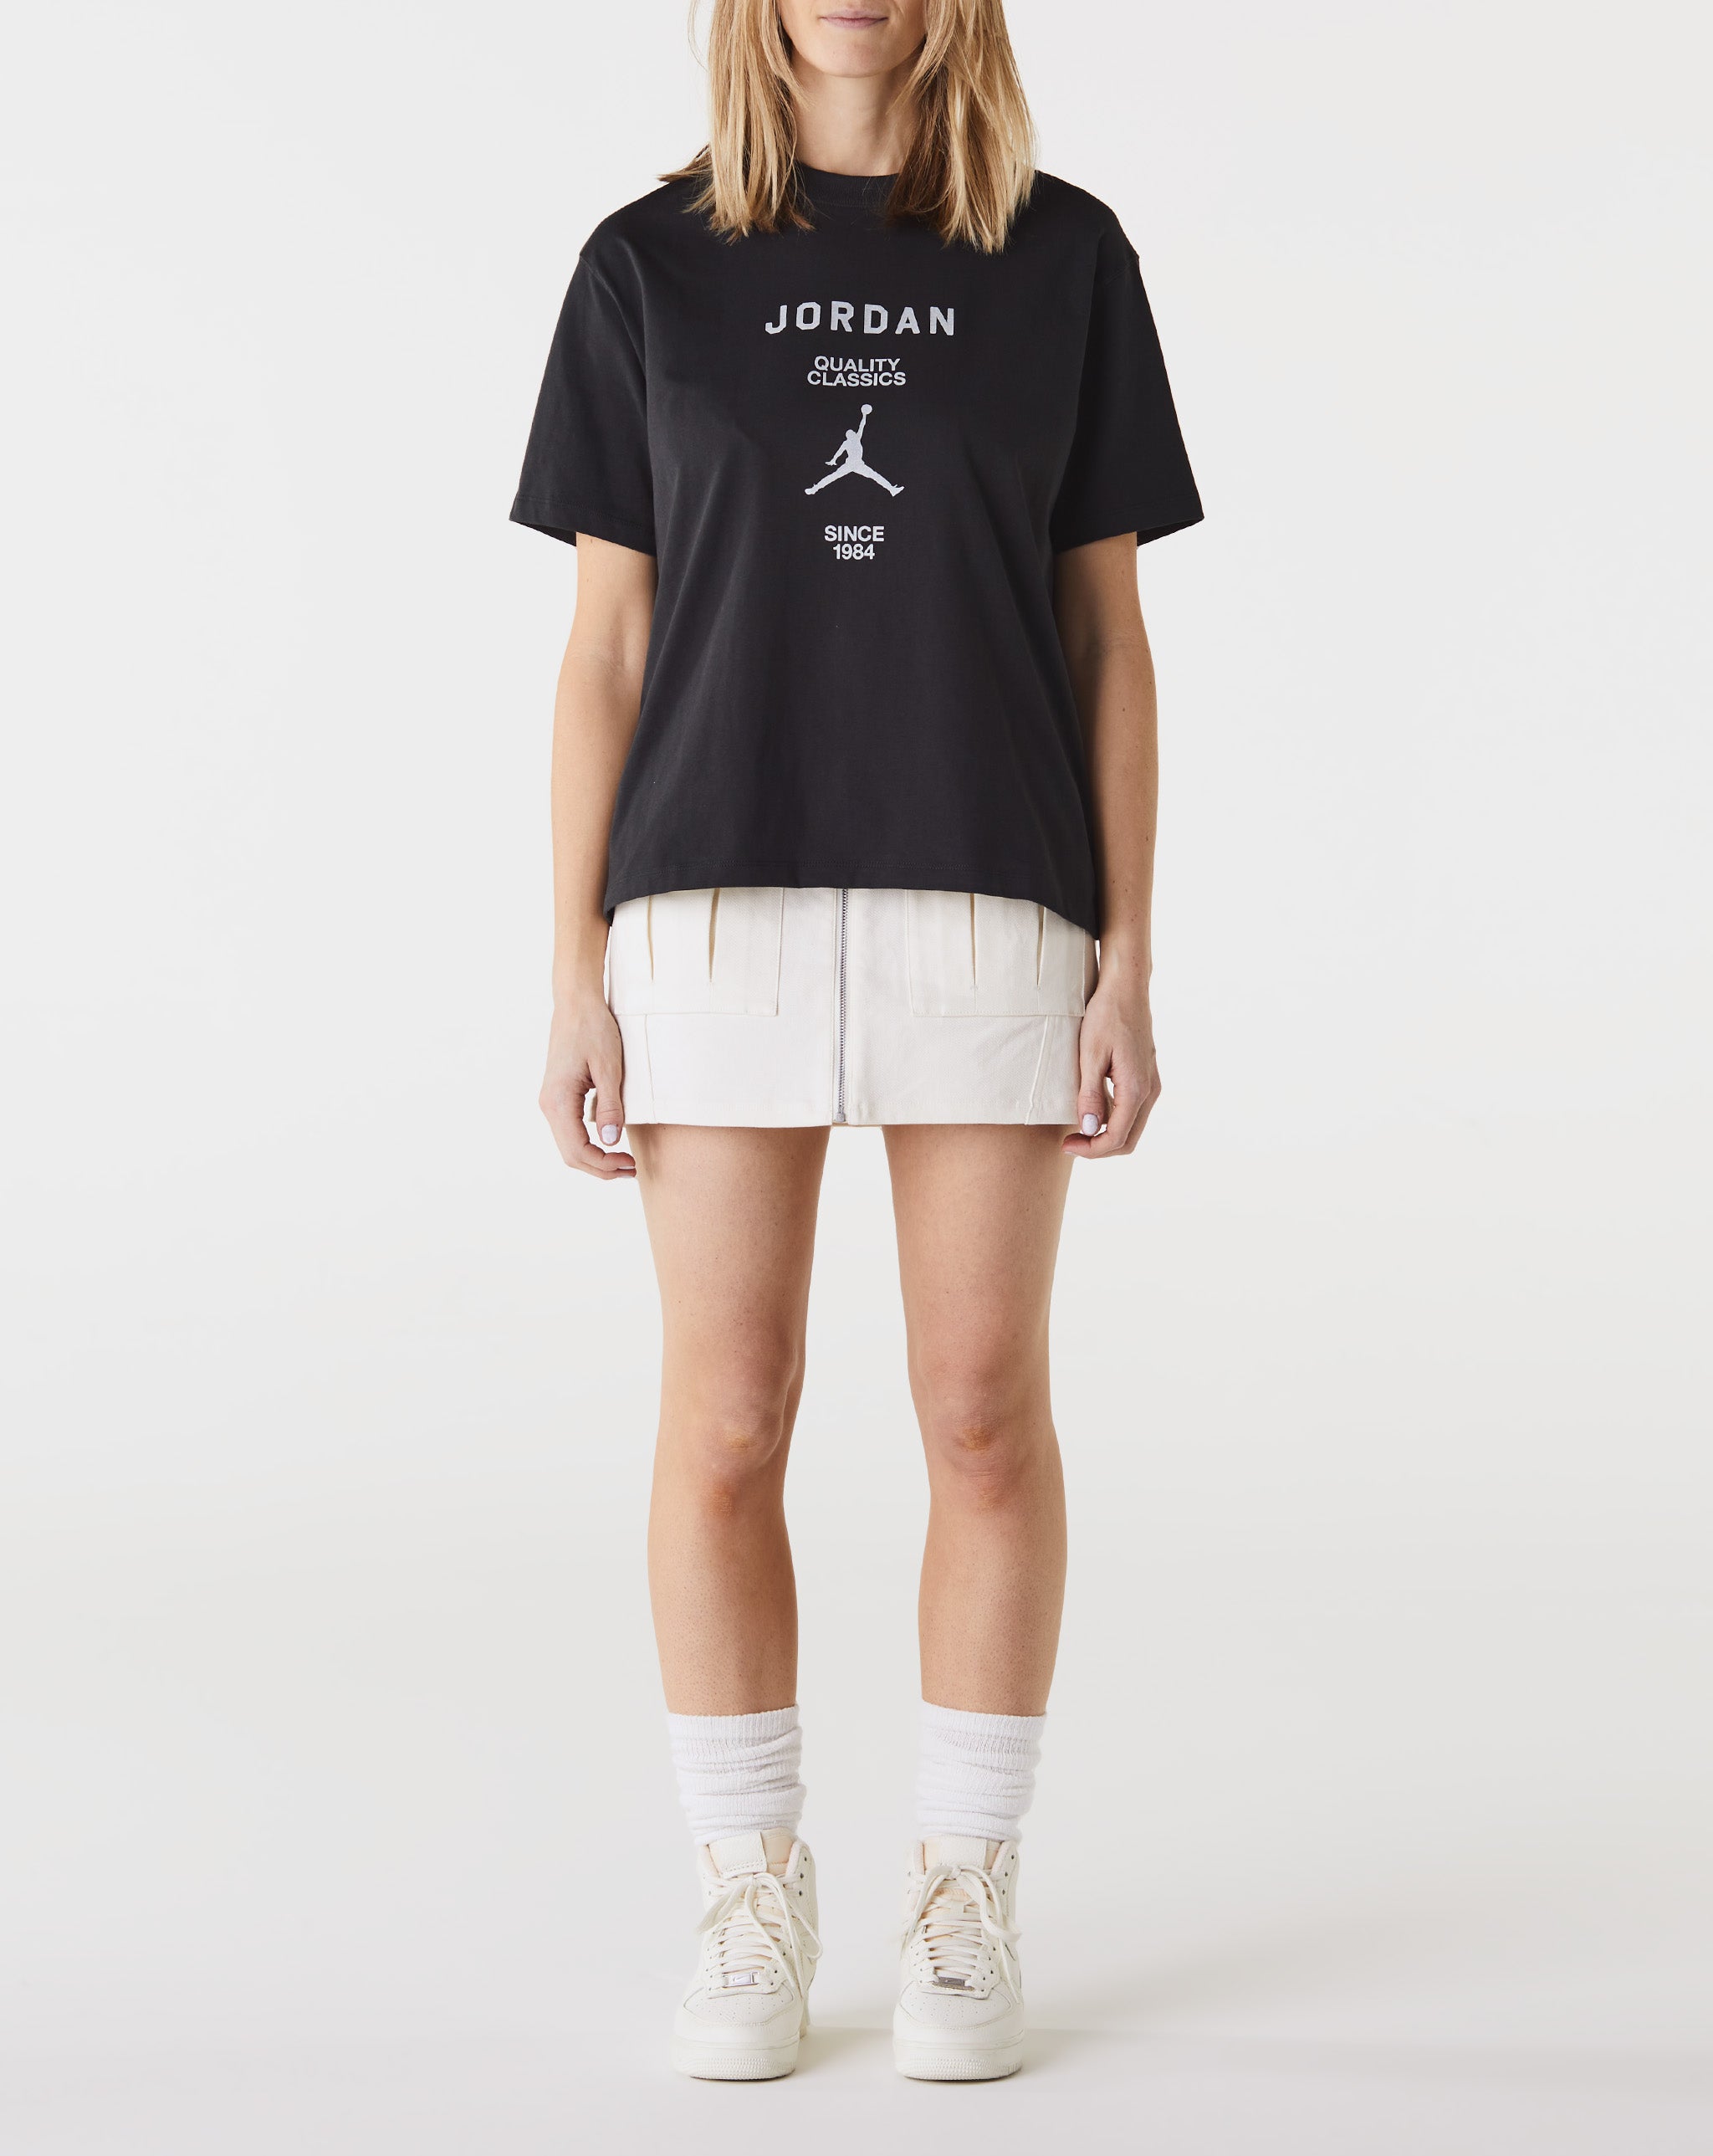 Jordan Brand reveals an official look a the Air Jordan 4 Zen Master releasing in March